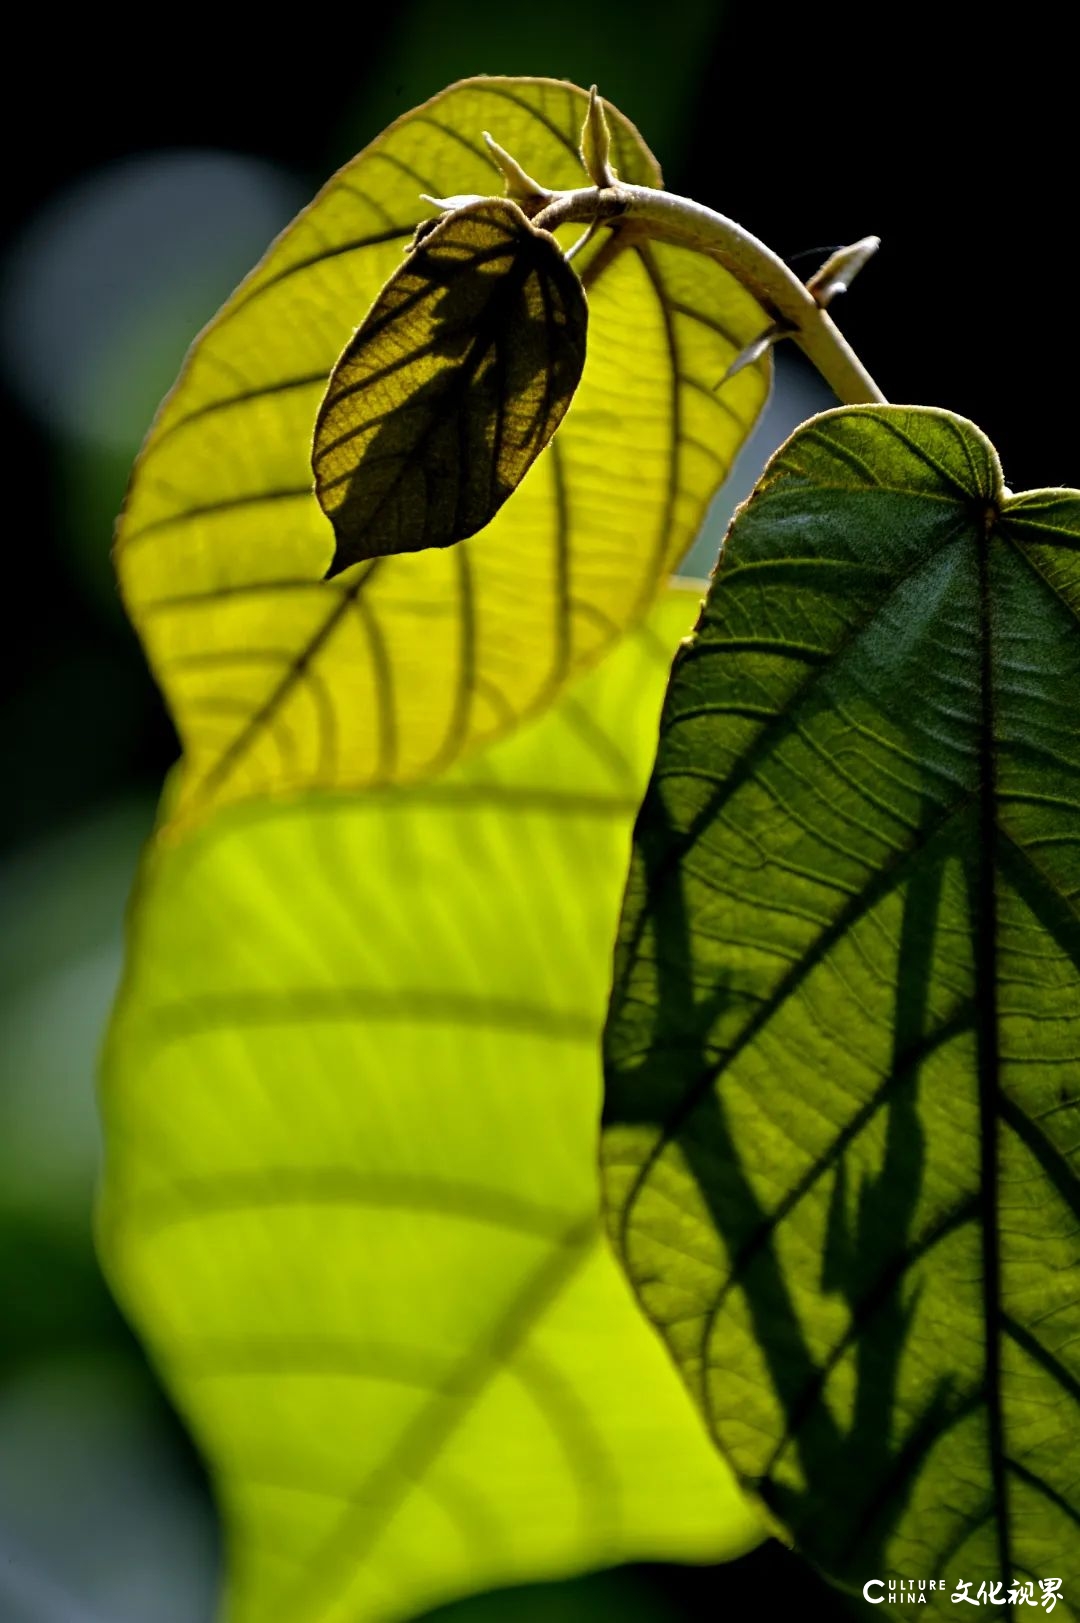 新闻摄影家宣传生态文明的阶段性汇报——《大地之上·钱捍“热带雨林珍稀植物”摄影作品展》在济南开幕